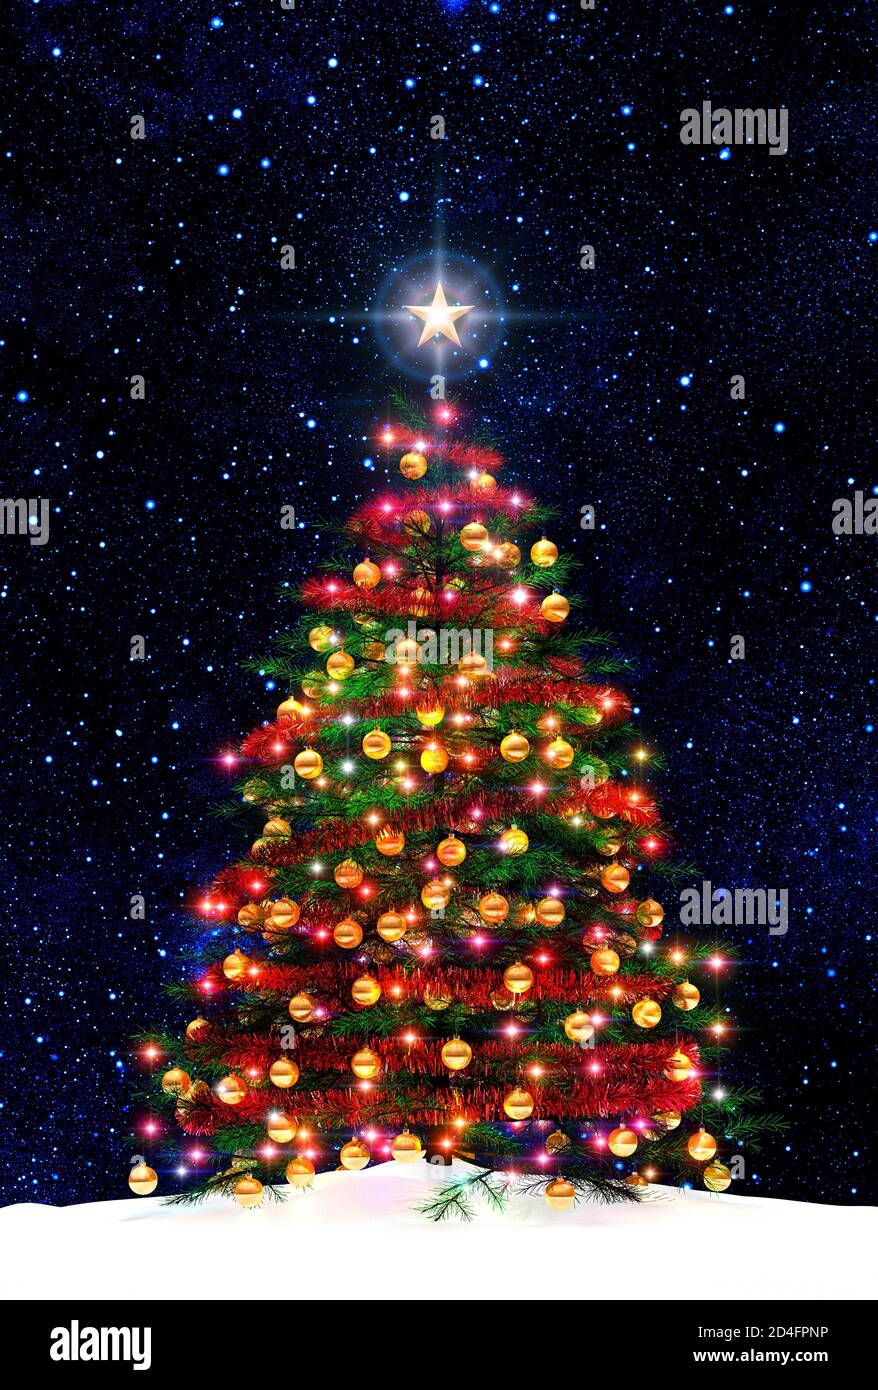 Weihnachtsbaum Stern Hintergrund, ausgeschnitten, isolierte Nacht, dekoriert mit Kugeln und Weihnachtsbeleuchtung. Schnee auf dem Boden. Goldene Dekorationen, Kugeln Stockfoto